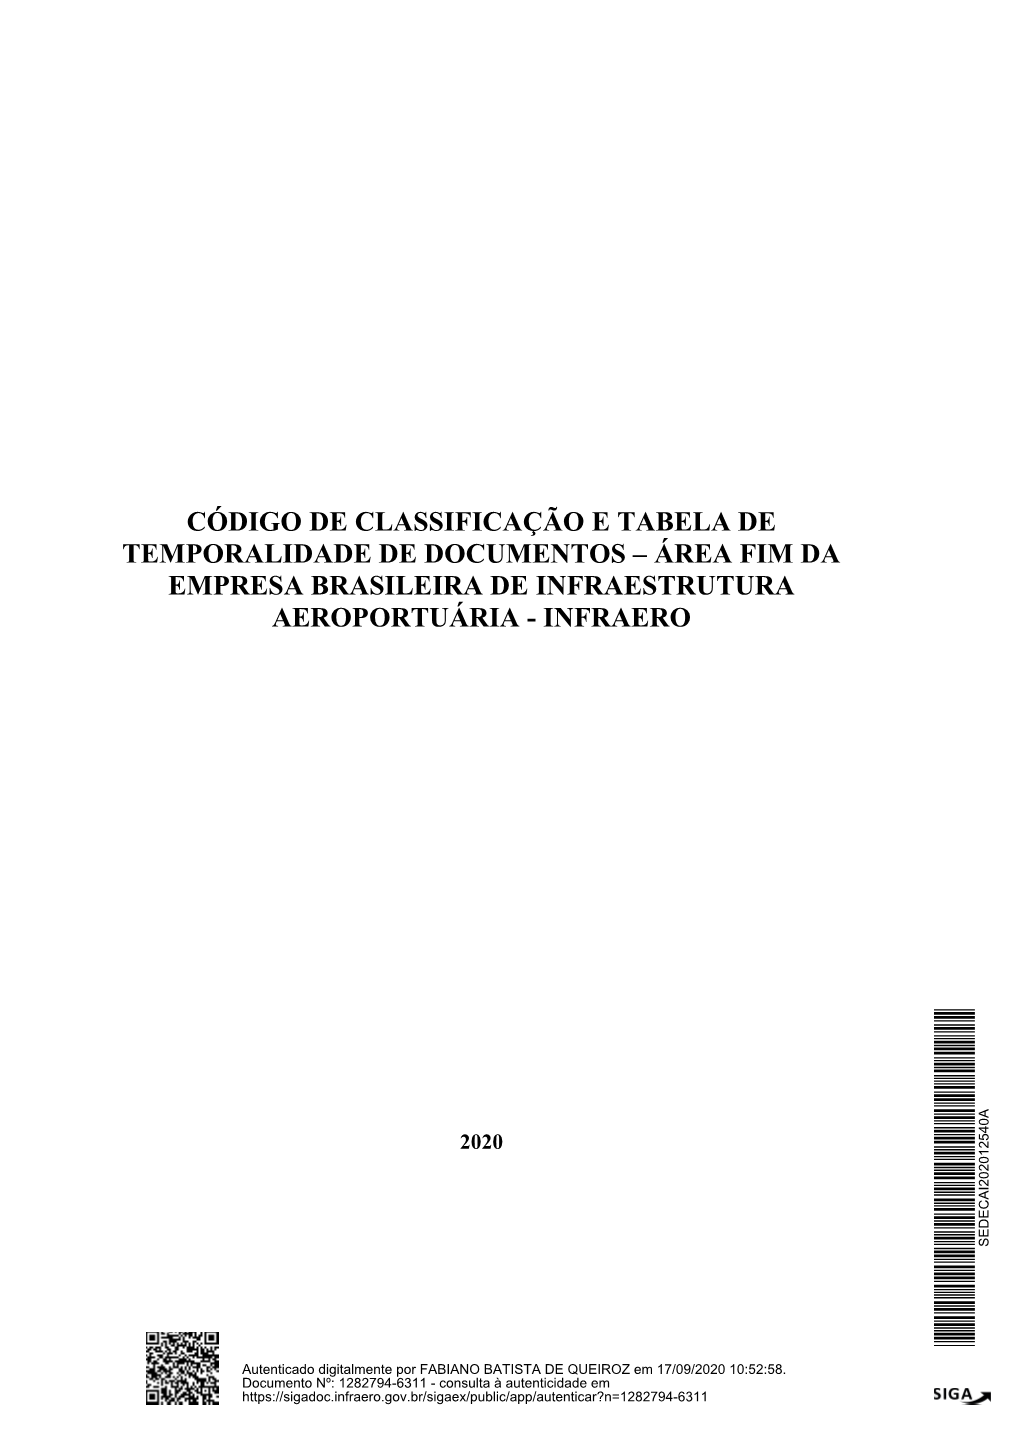 Código De Classificação E Tabela De Temporalidade De Documentos – Área Fim Da Empresa Brasileira De Infraestrutura Aeroportuária - Infraero